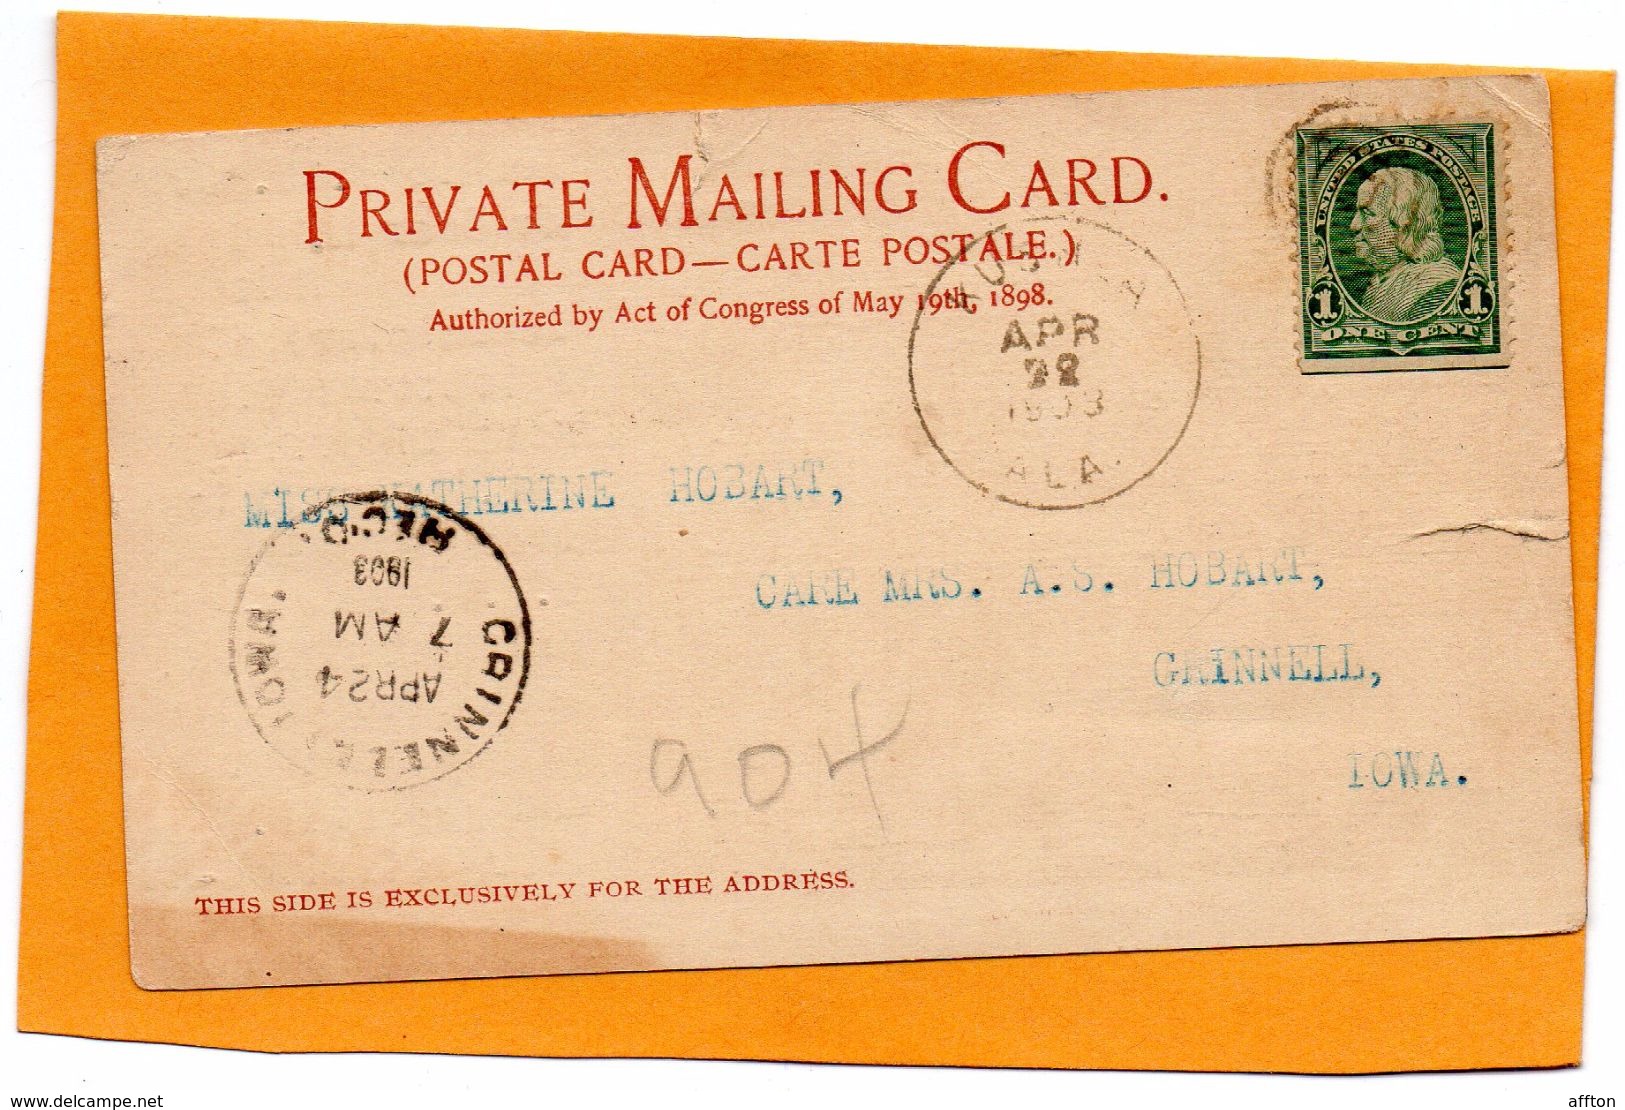 Mobile Ala 1903 Postcard - Mobile